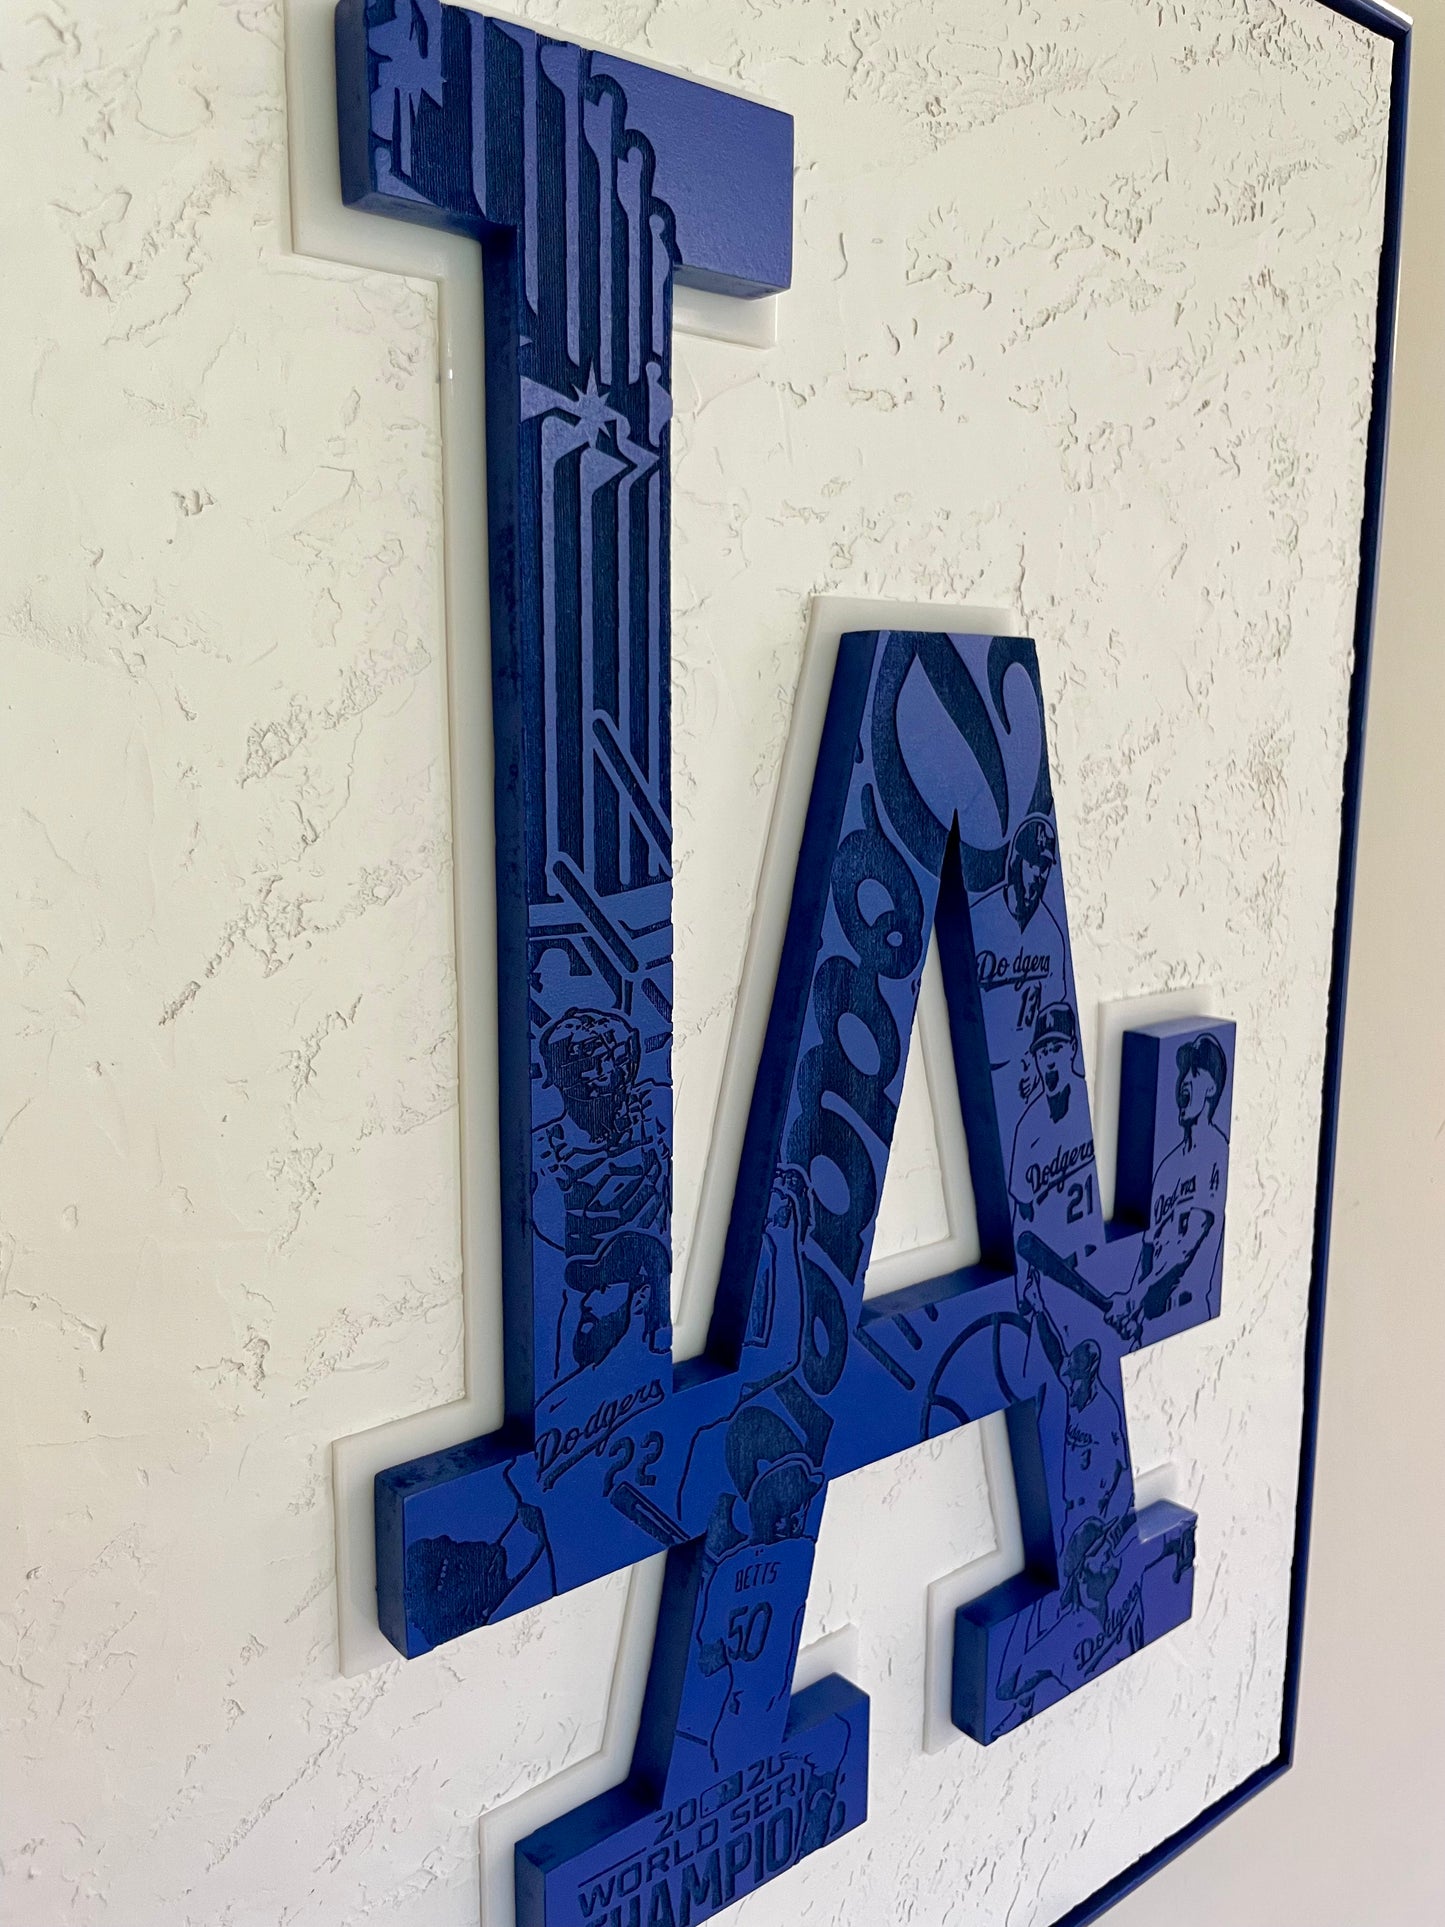 Framed Dodgers led sign